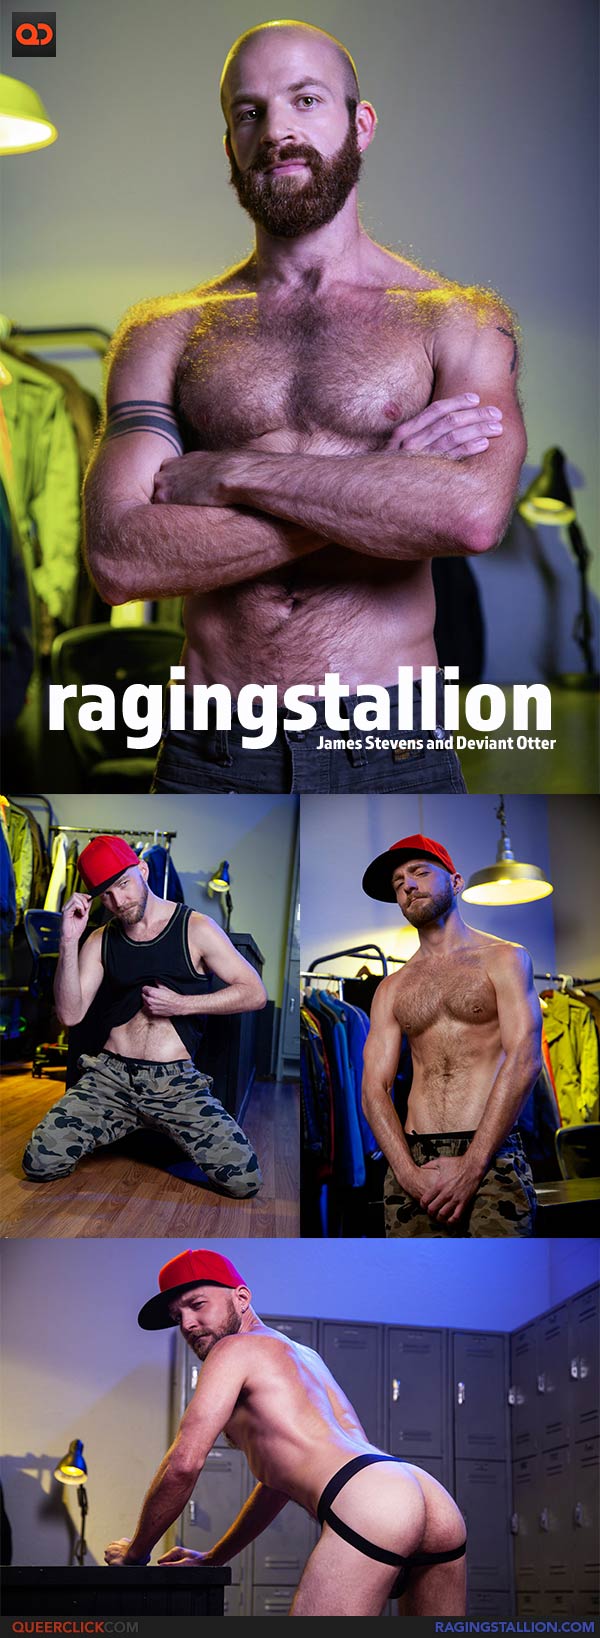 Raging Stallion: James Stevens and Deviant Otter